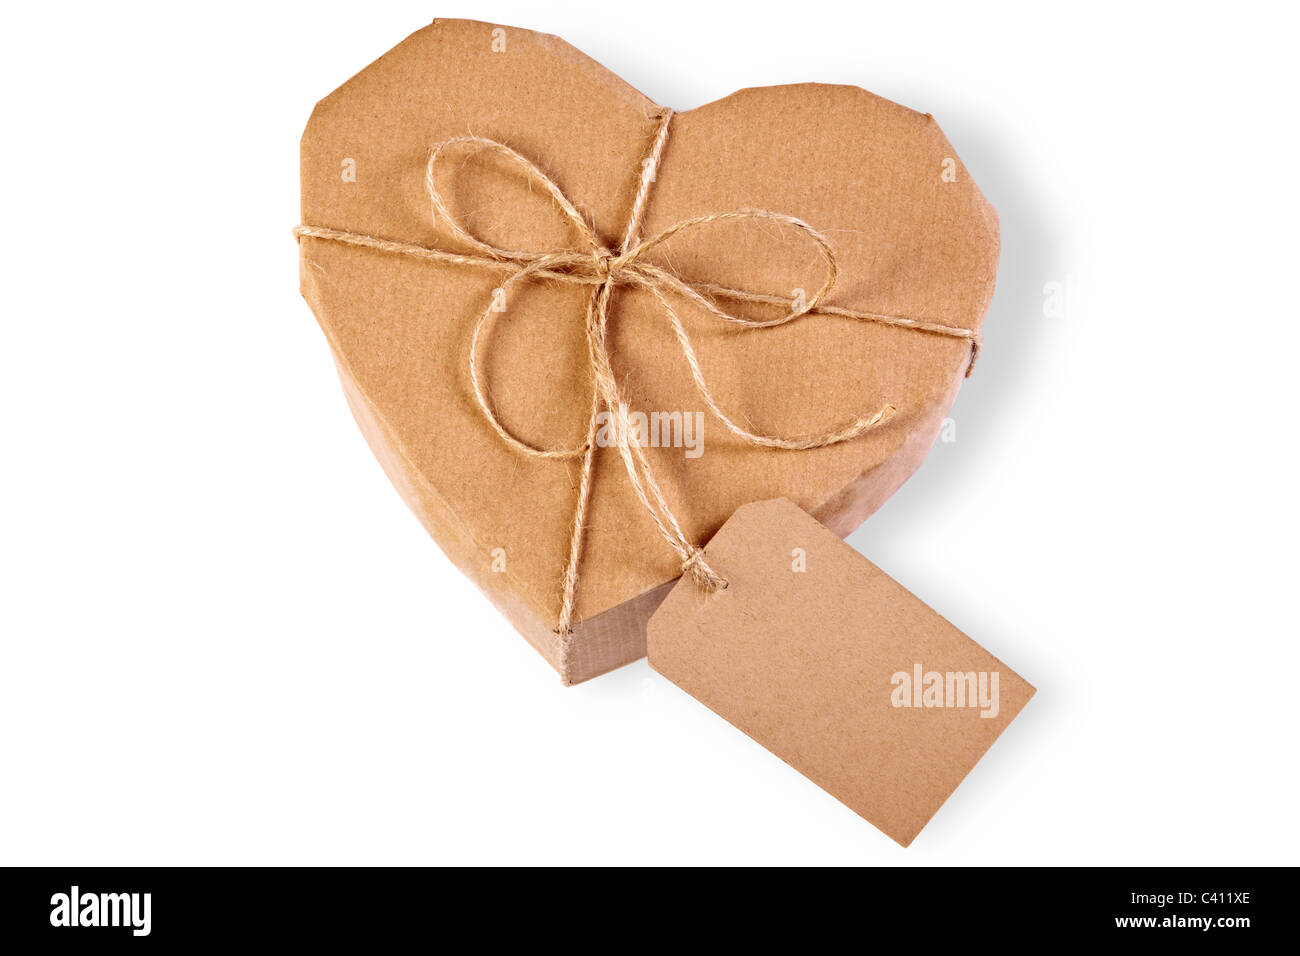 Foto de un corazón caja de regalo envuelto en papel marrón con etiqueta, aislado en un fondo blanco. Foto de stock